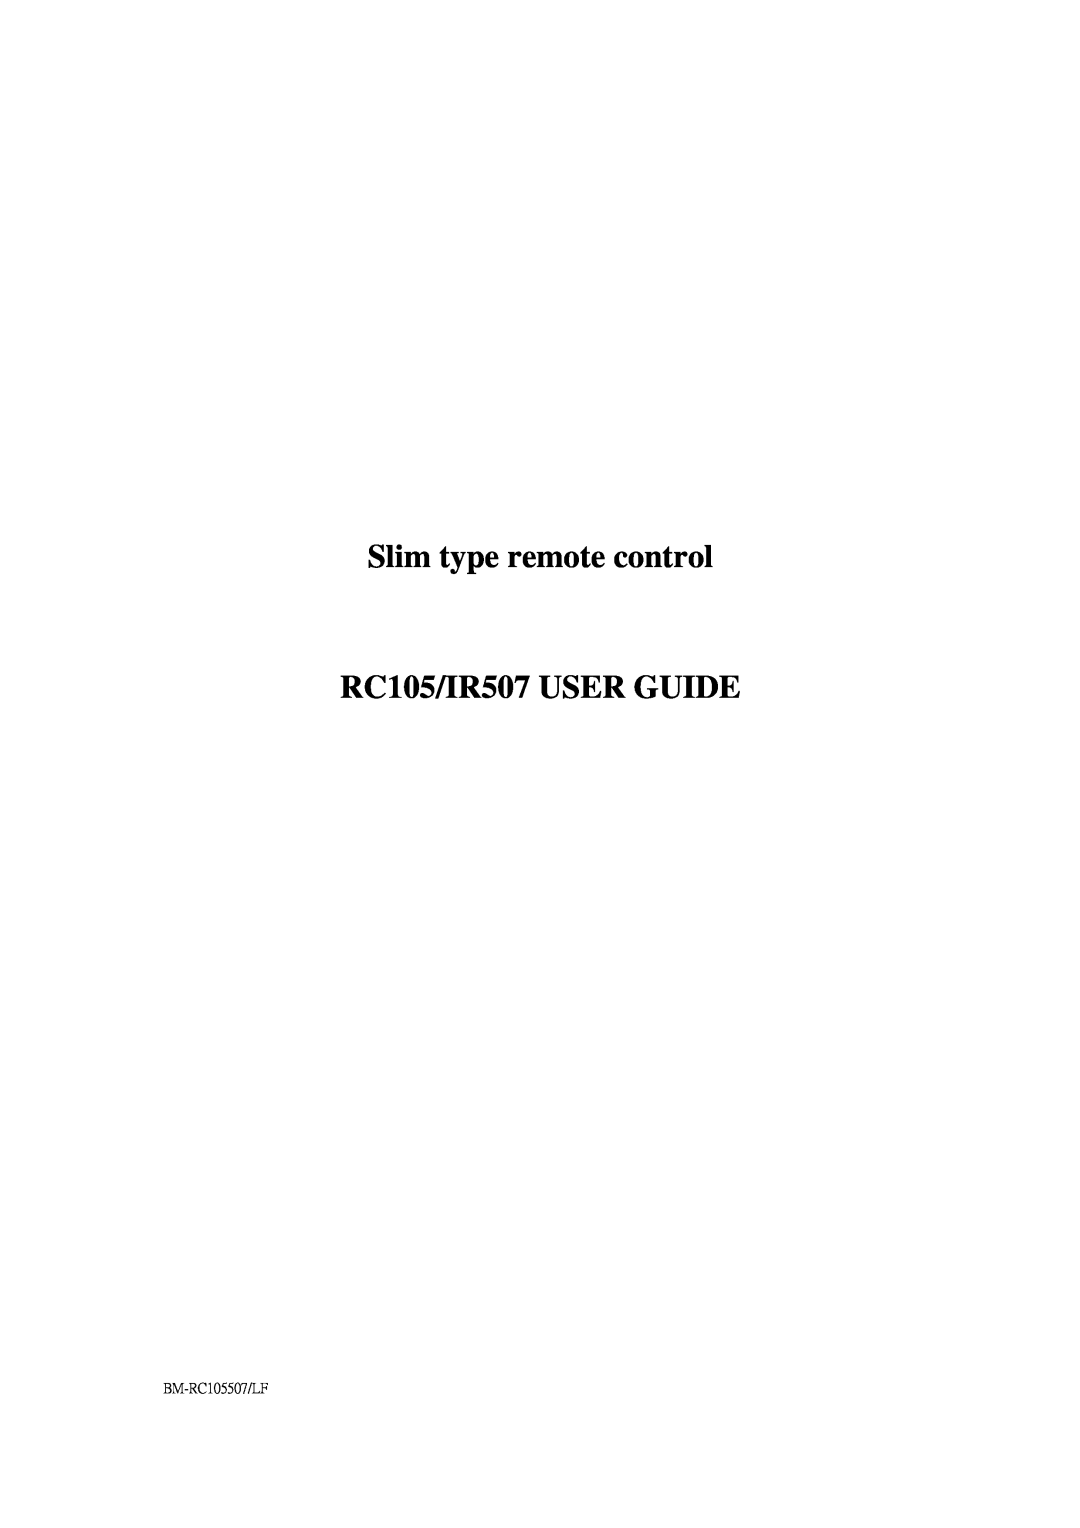 IBM manual Slim type remote control RC105/IR507 USER GUIDE, BM-RC105507/LF 